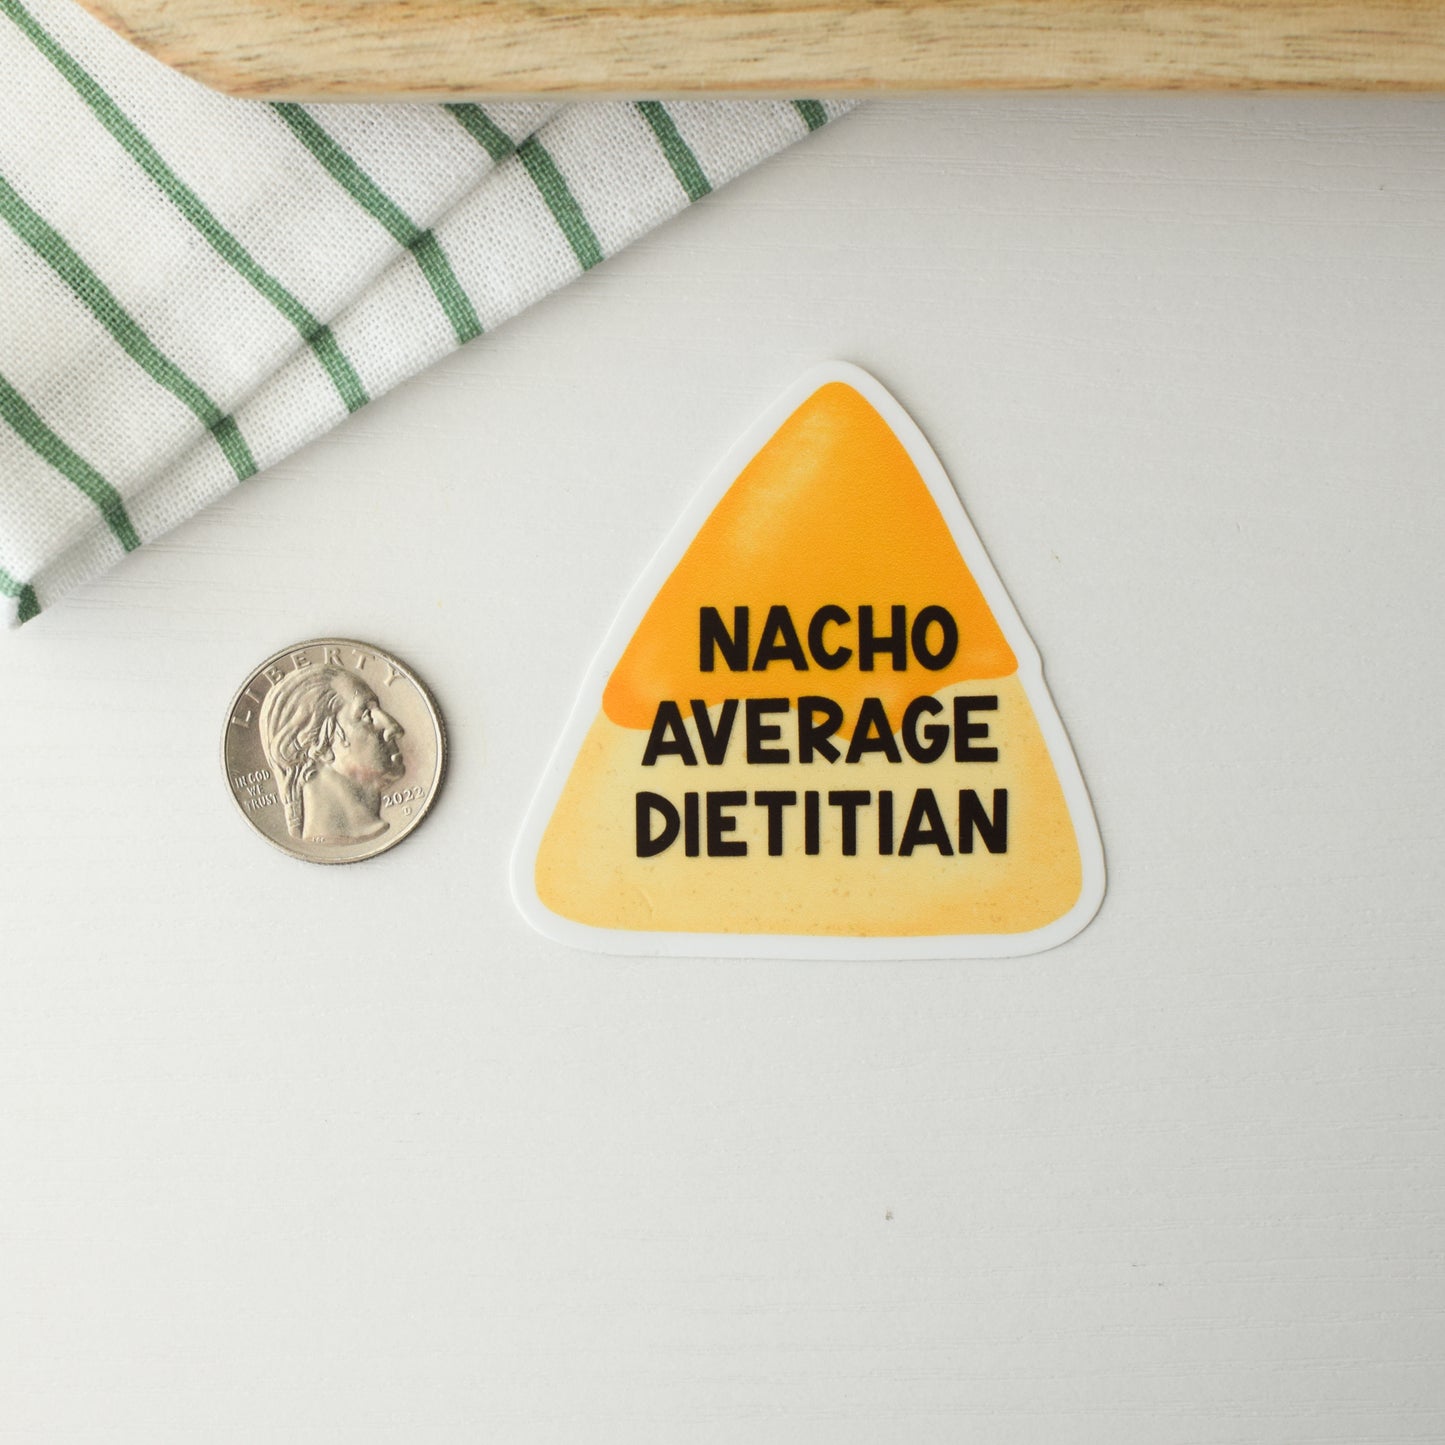 Nacho Average Dietitian Sticker